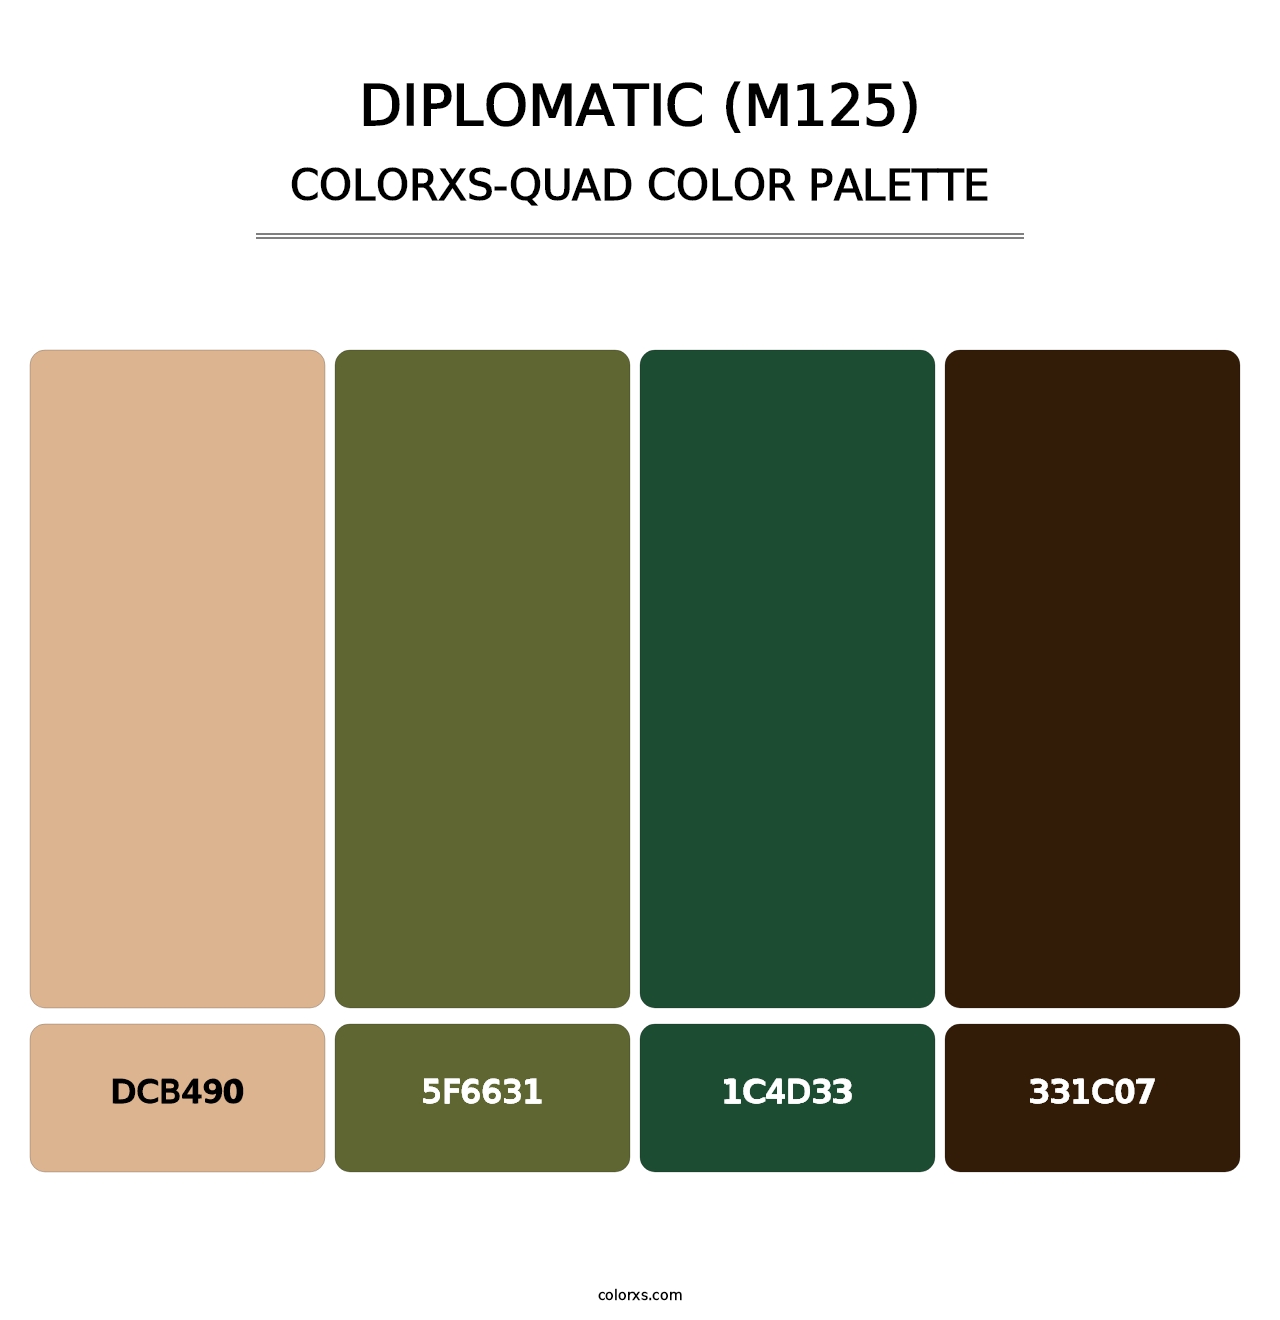 Diplomatic (M125) - Colorxs Quad Palette